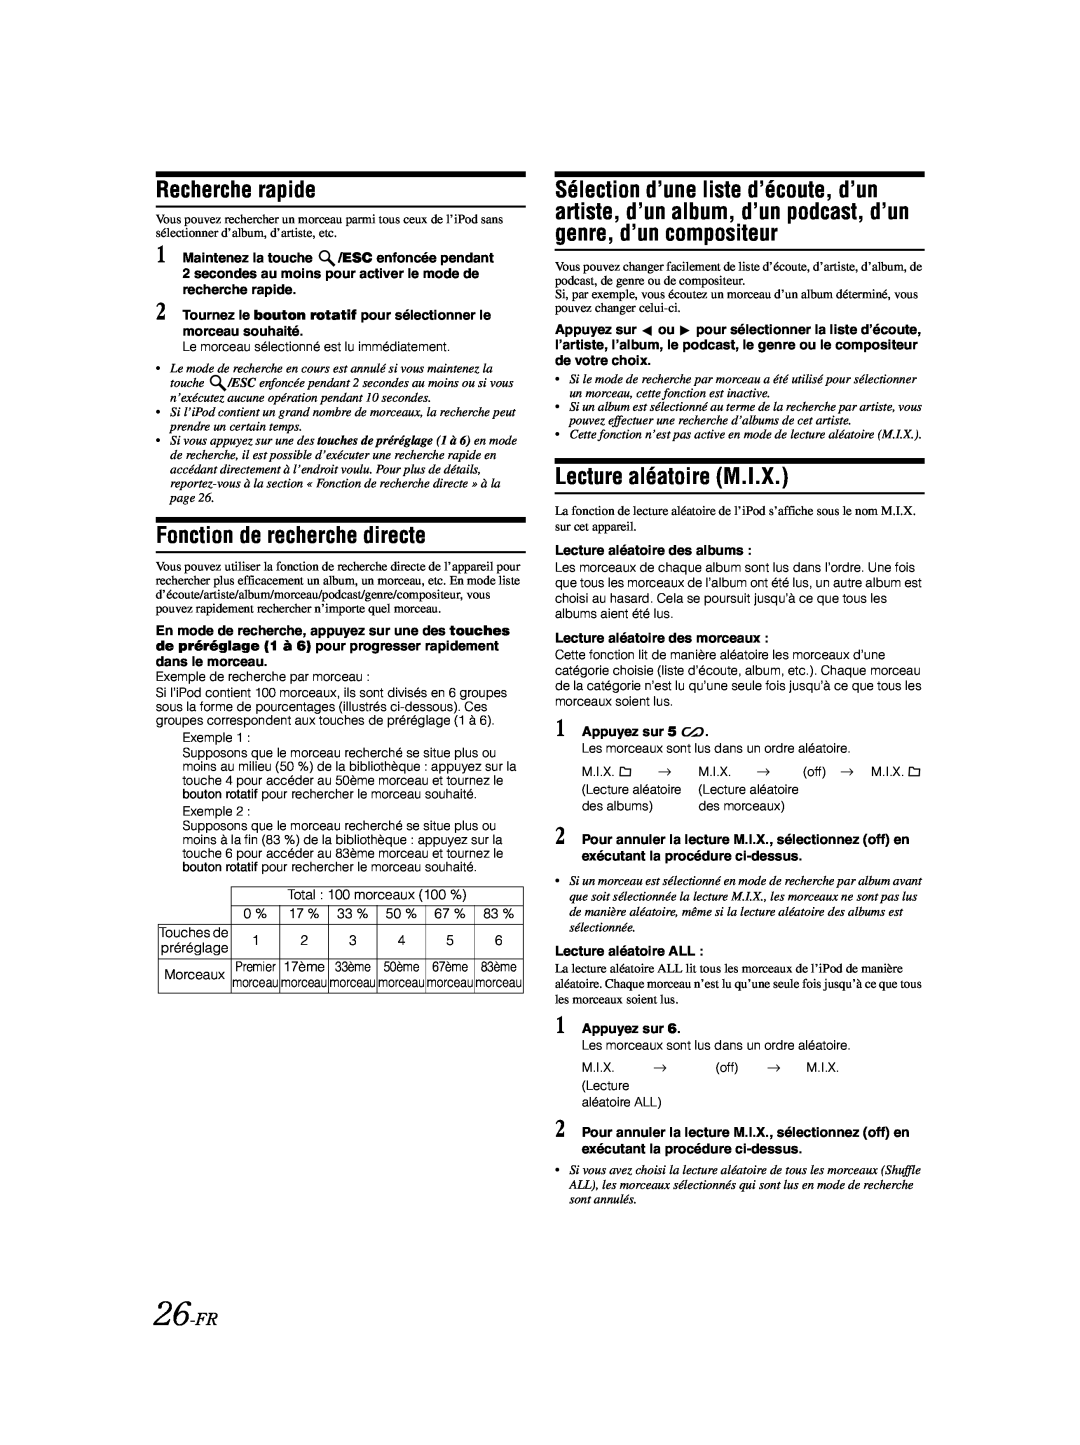 Alpine CDA-9885 owner manual Fonction de recherche directe, Lecture aléatoire M.I.X, Recherche rapide, 26-FR 